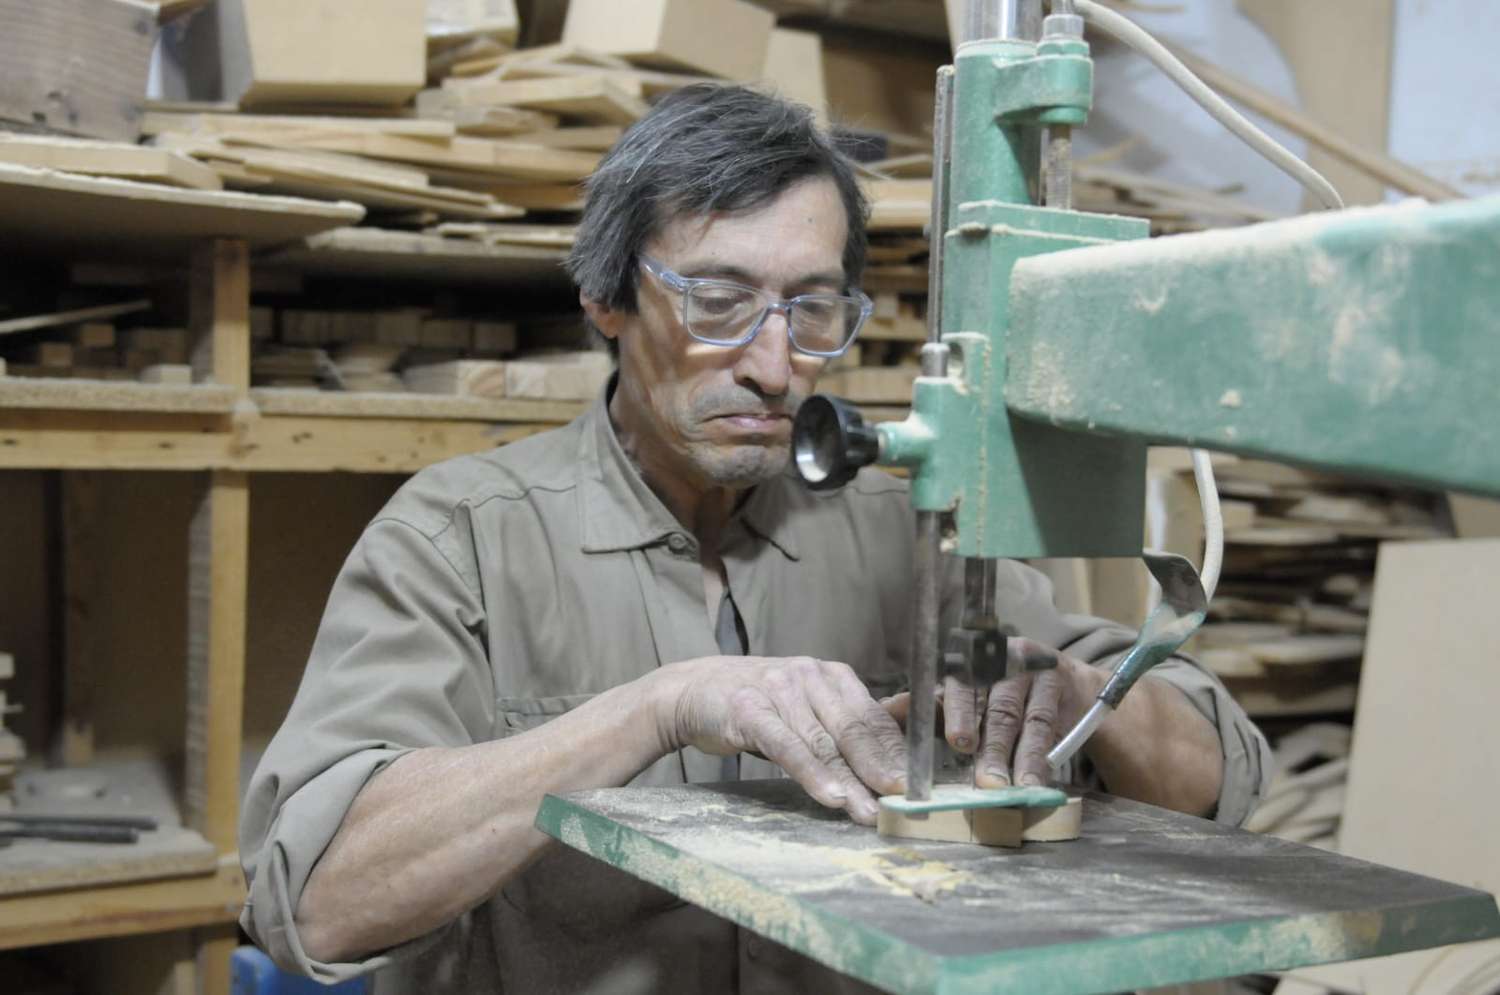 Miguel el carpintero solidario, 5 años entregando alegría para los chicos en su día